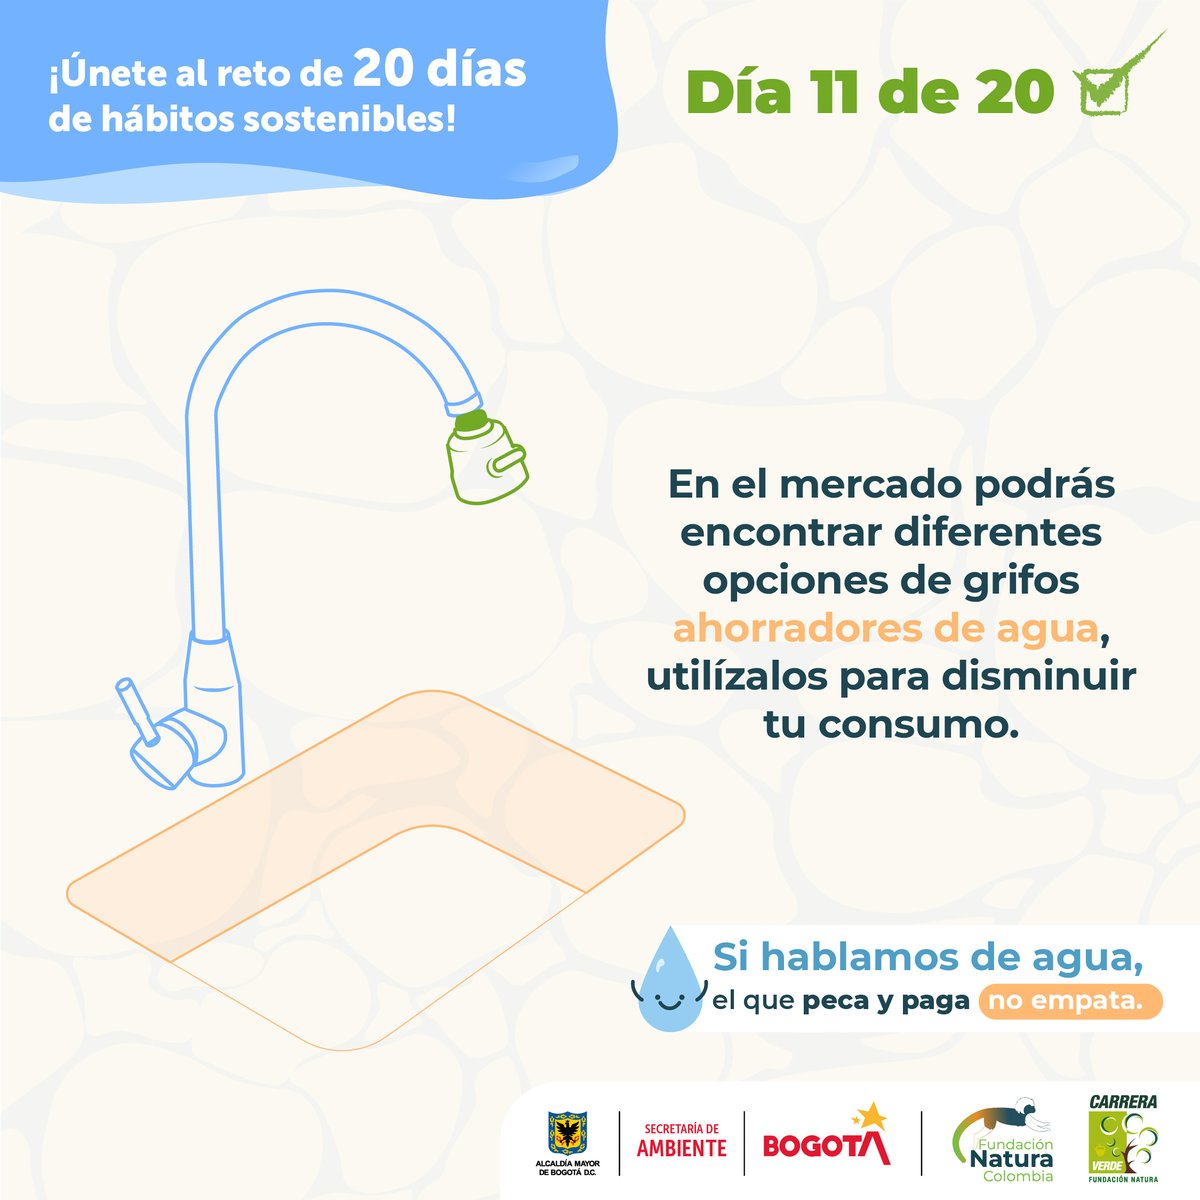 Conoce el reto número 11 de los #20DíasMásSostenibles♻️🌎 En los hogares de Bogotá, las actividades de la cocina constituyen el segundo mayor consumo de agua. Una idea para reducirlo es la instalación de grifos ahorradores. #CierraLaLlaveYa #ElAguaNosConecta